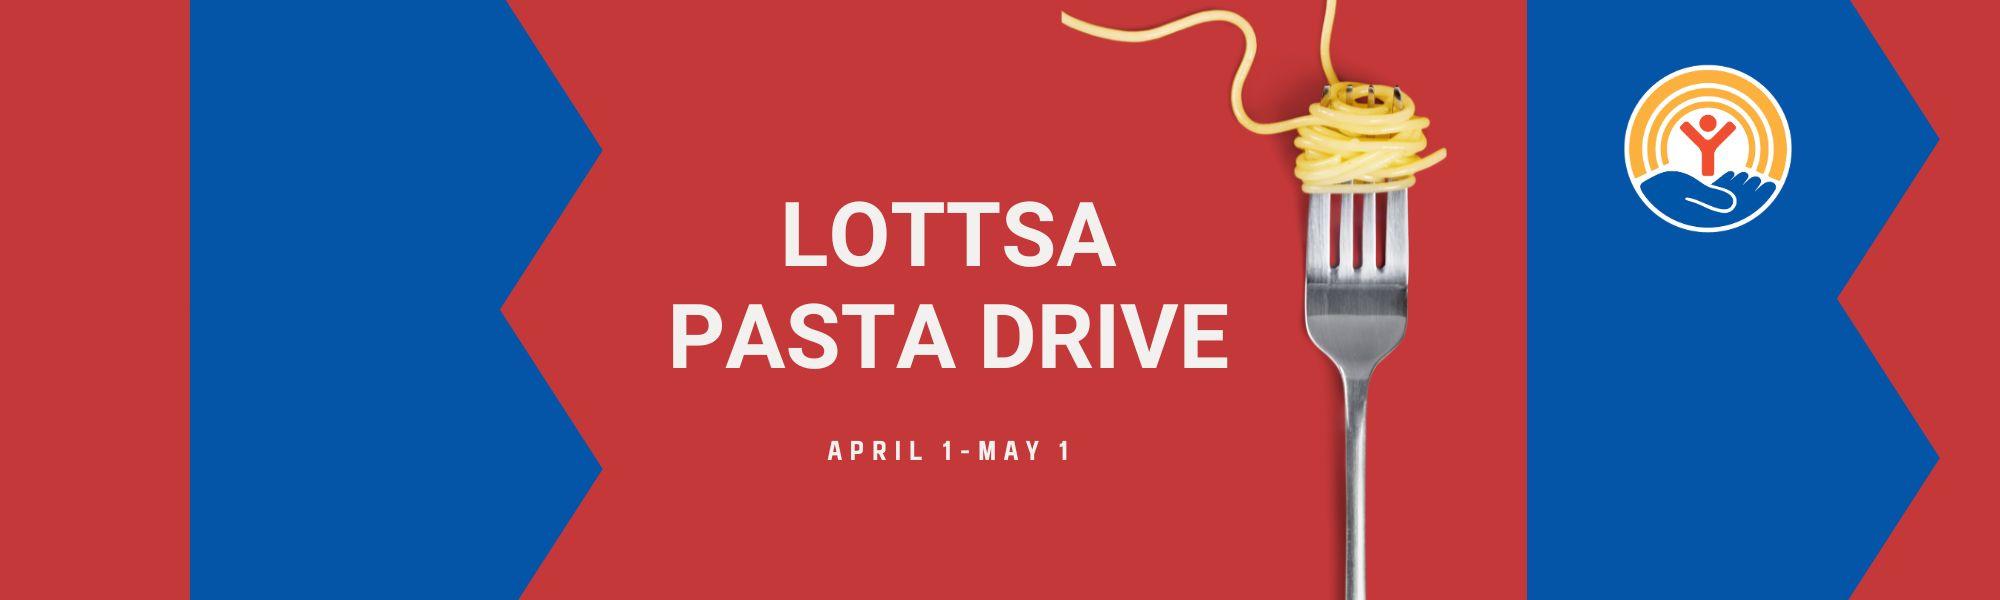 Web Banner Lottsa Pasta Drive